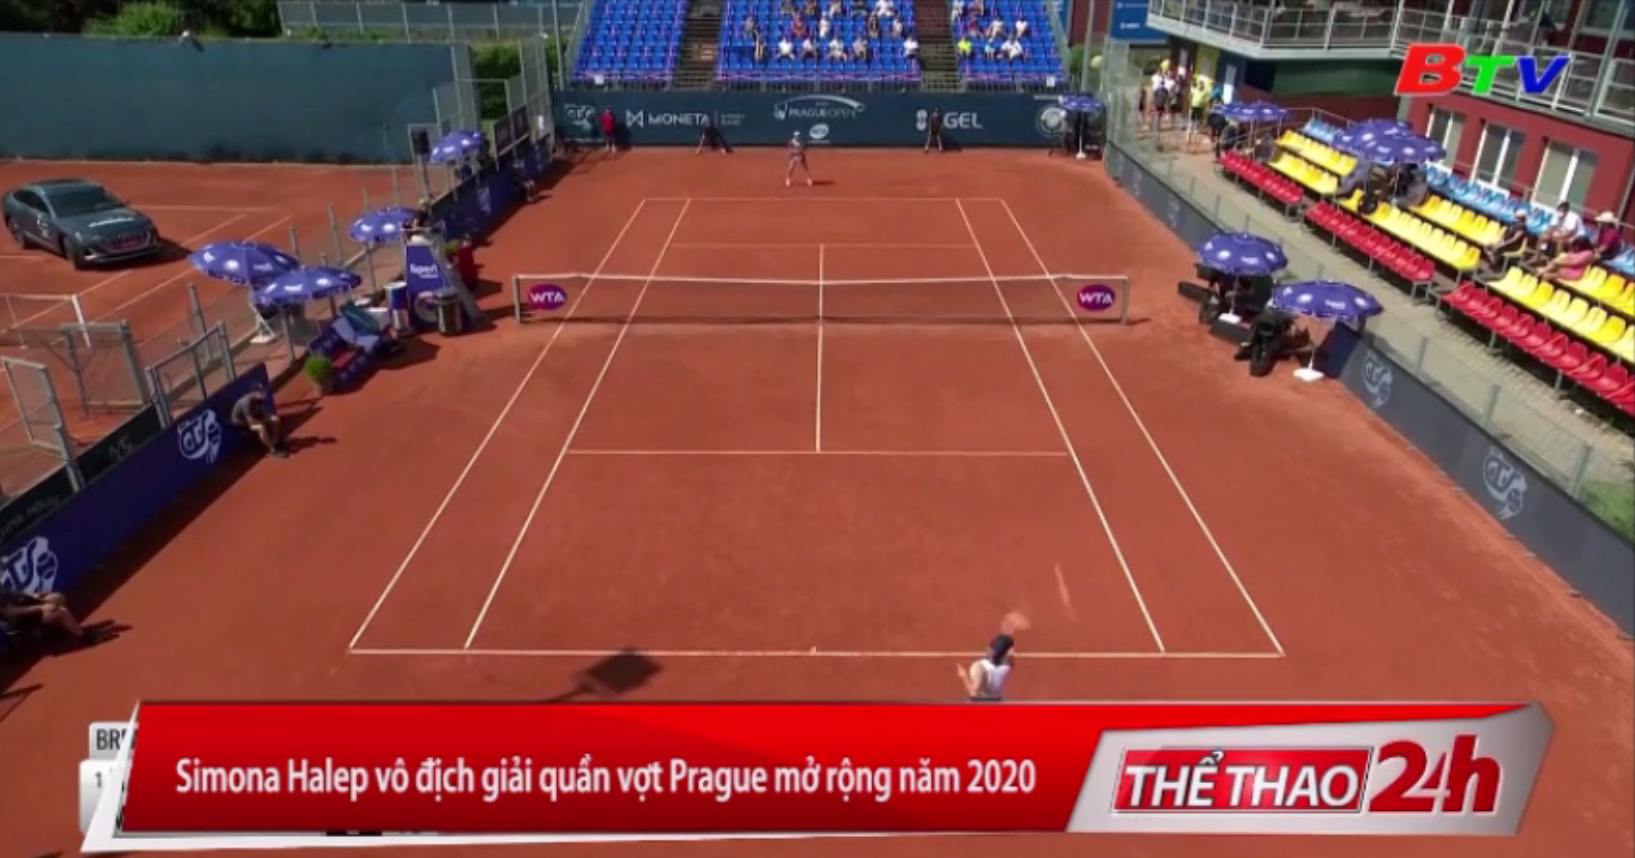 Simona Halep vô địch giải quần vợt Prague mở rộng năm 2020